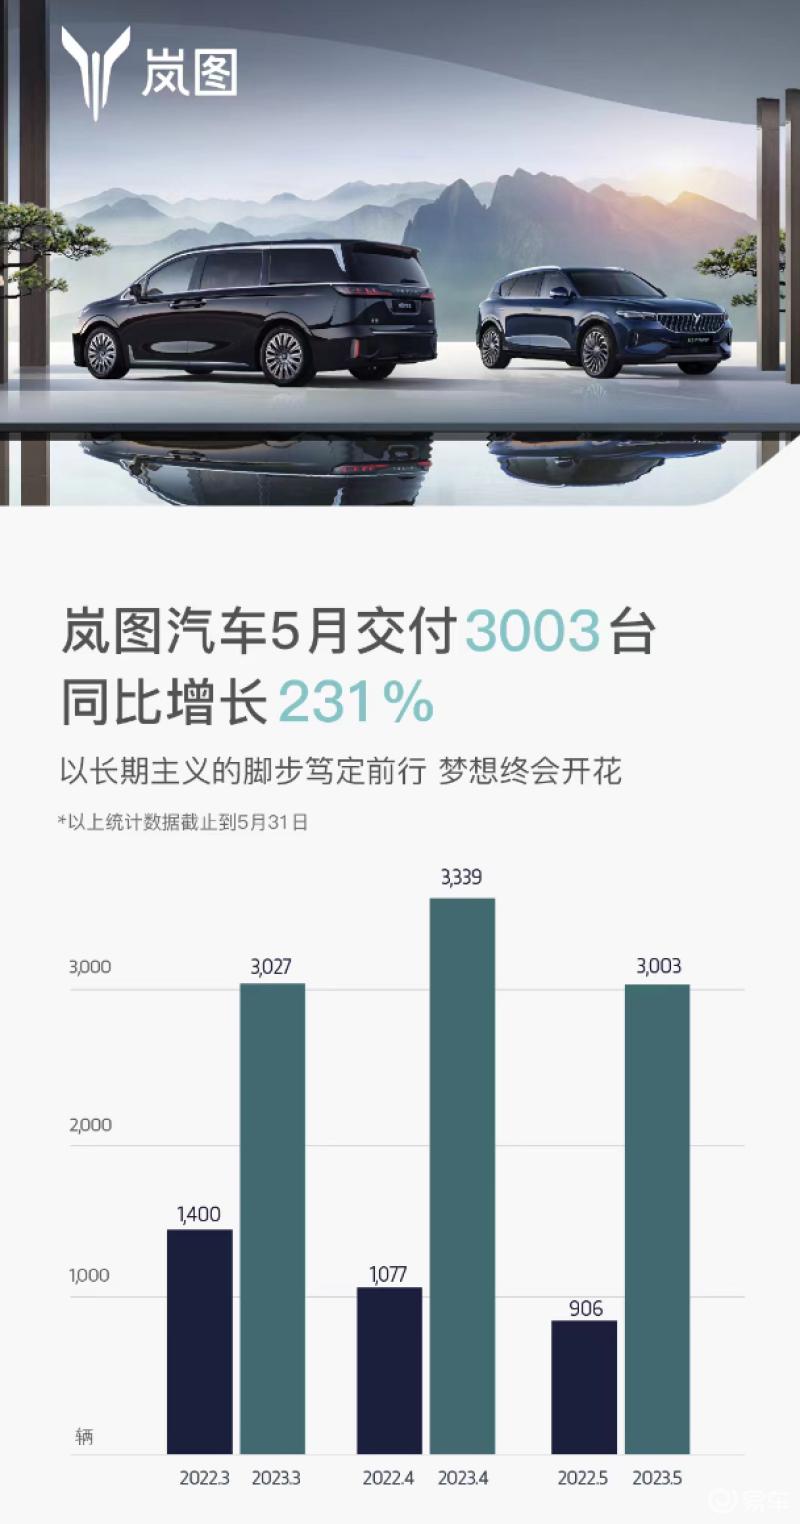 岚图汽车 5 月交付 3003 辆，同比大涨 231%